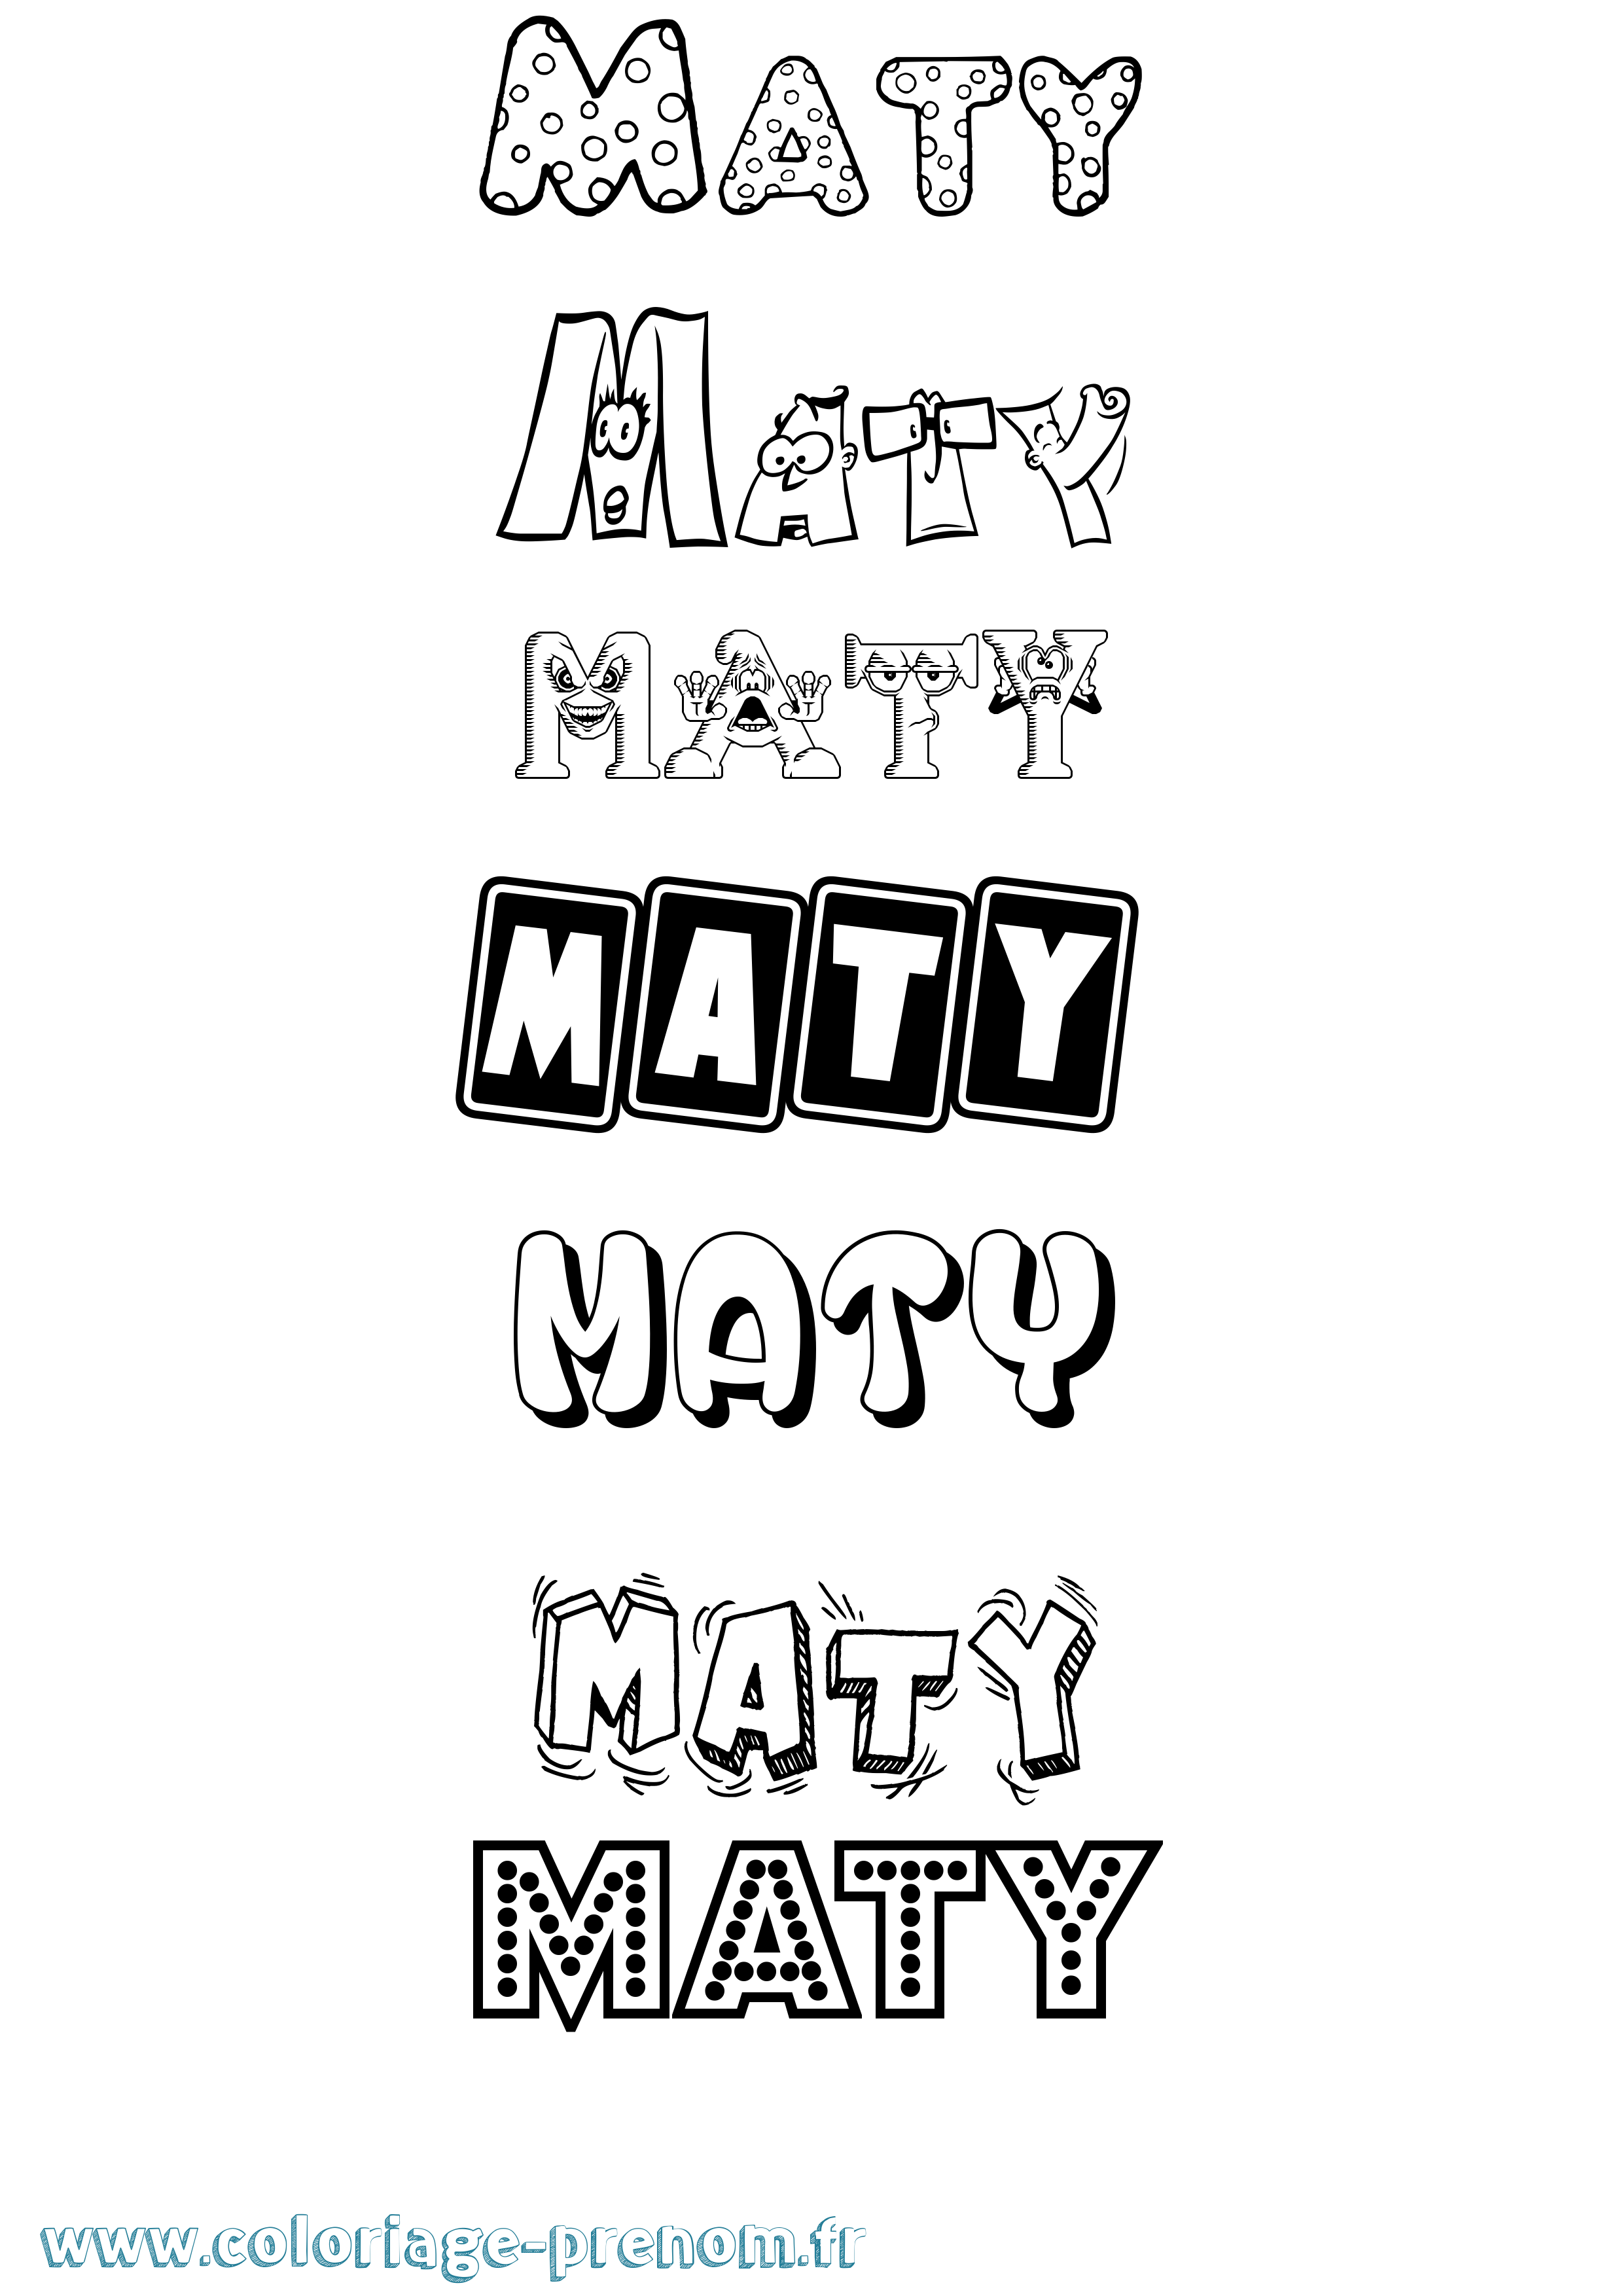 Coloriage prénom Maty Fun